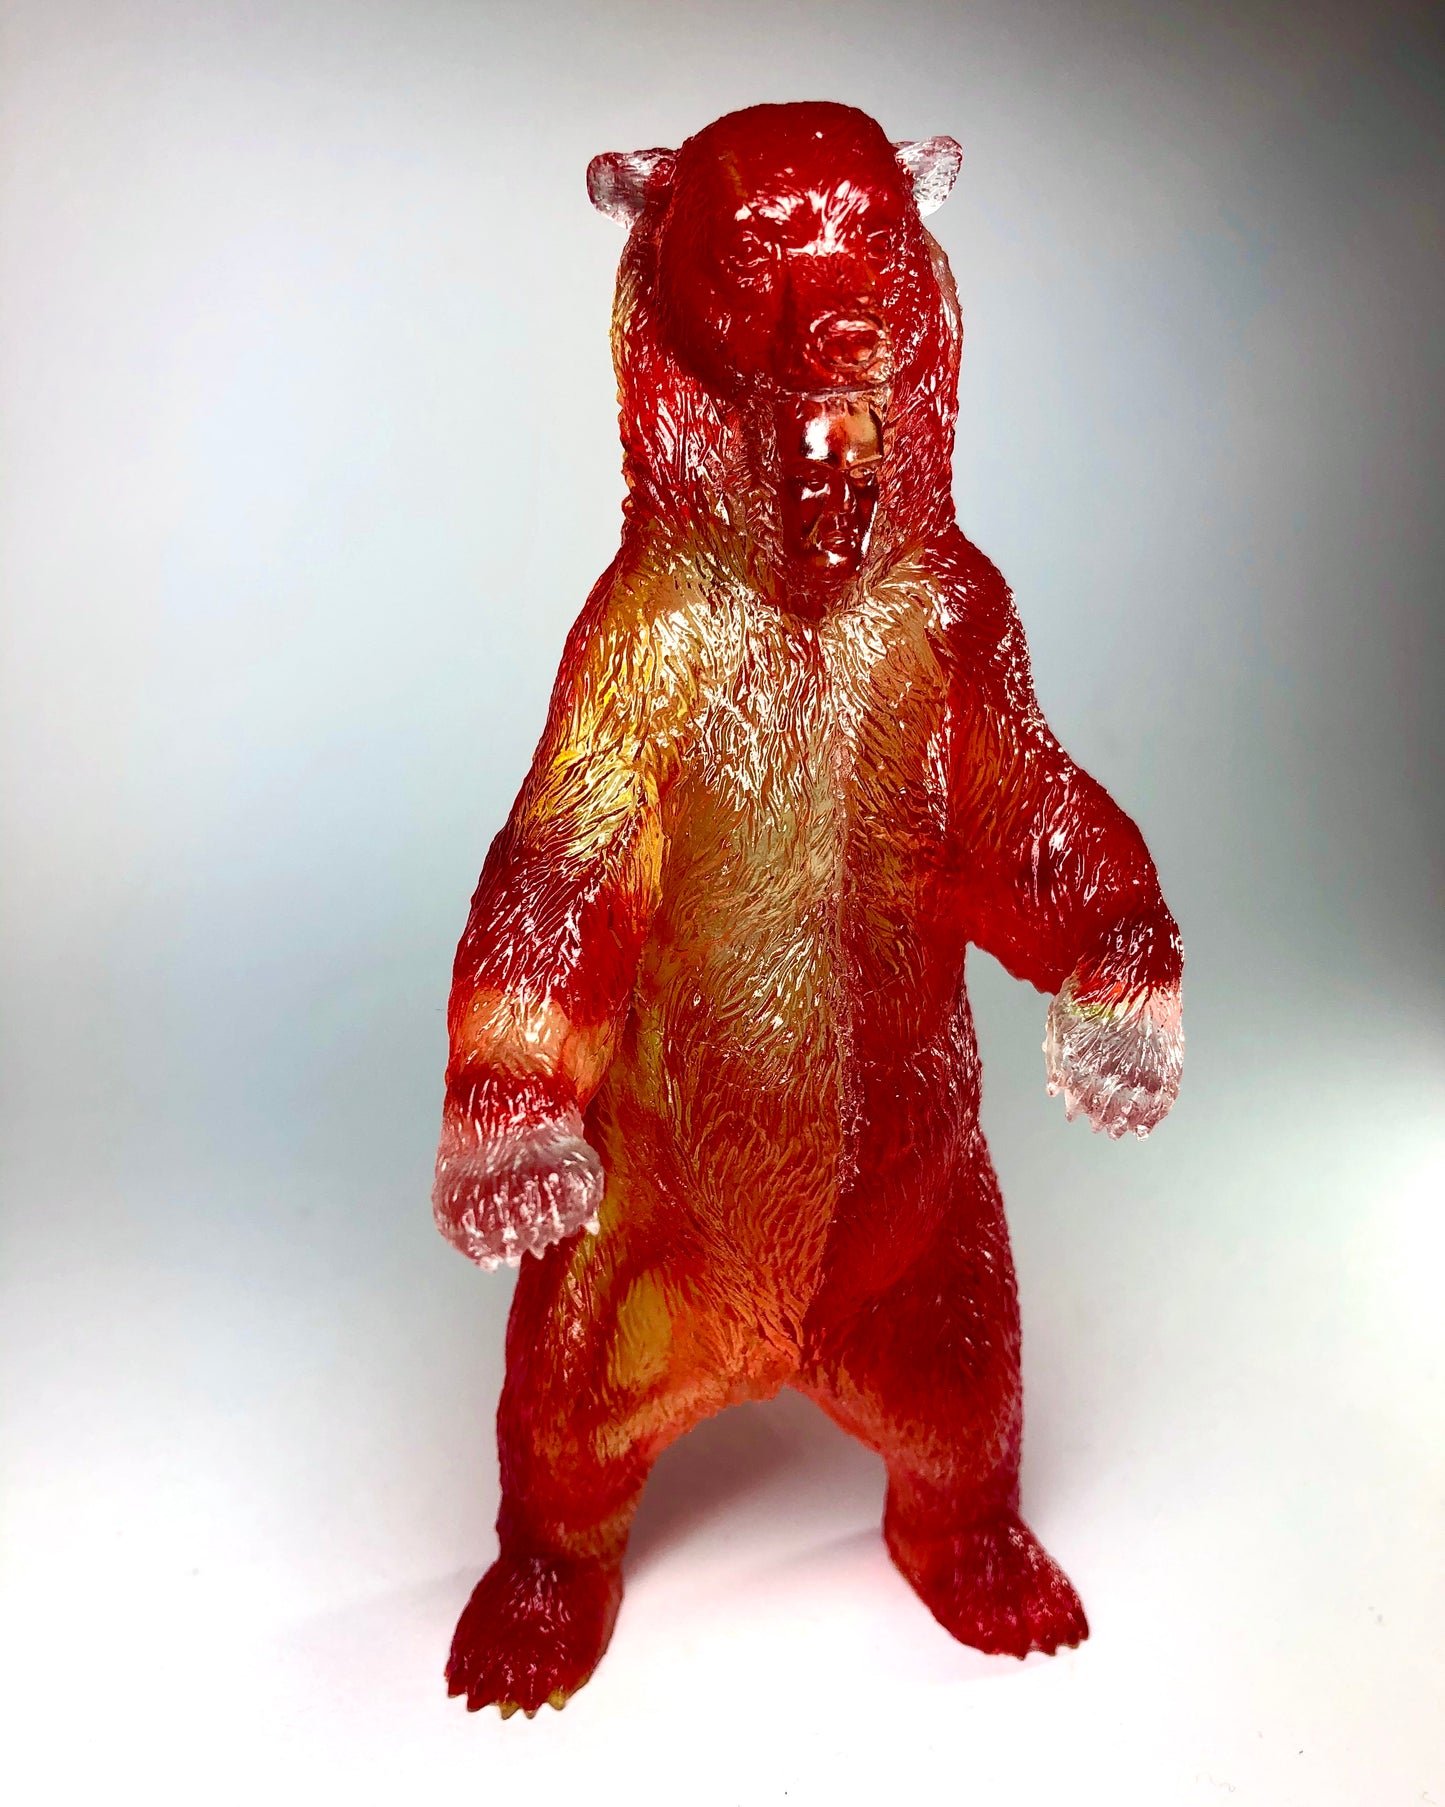 Bear Suit Figure